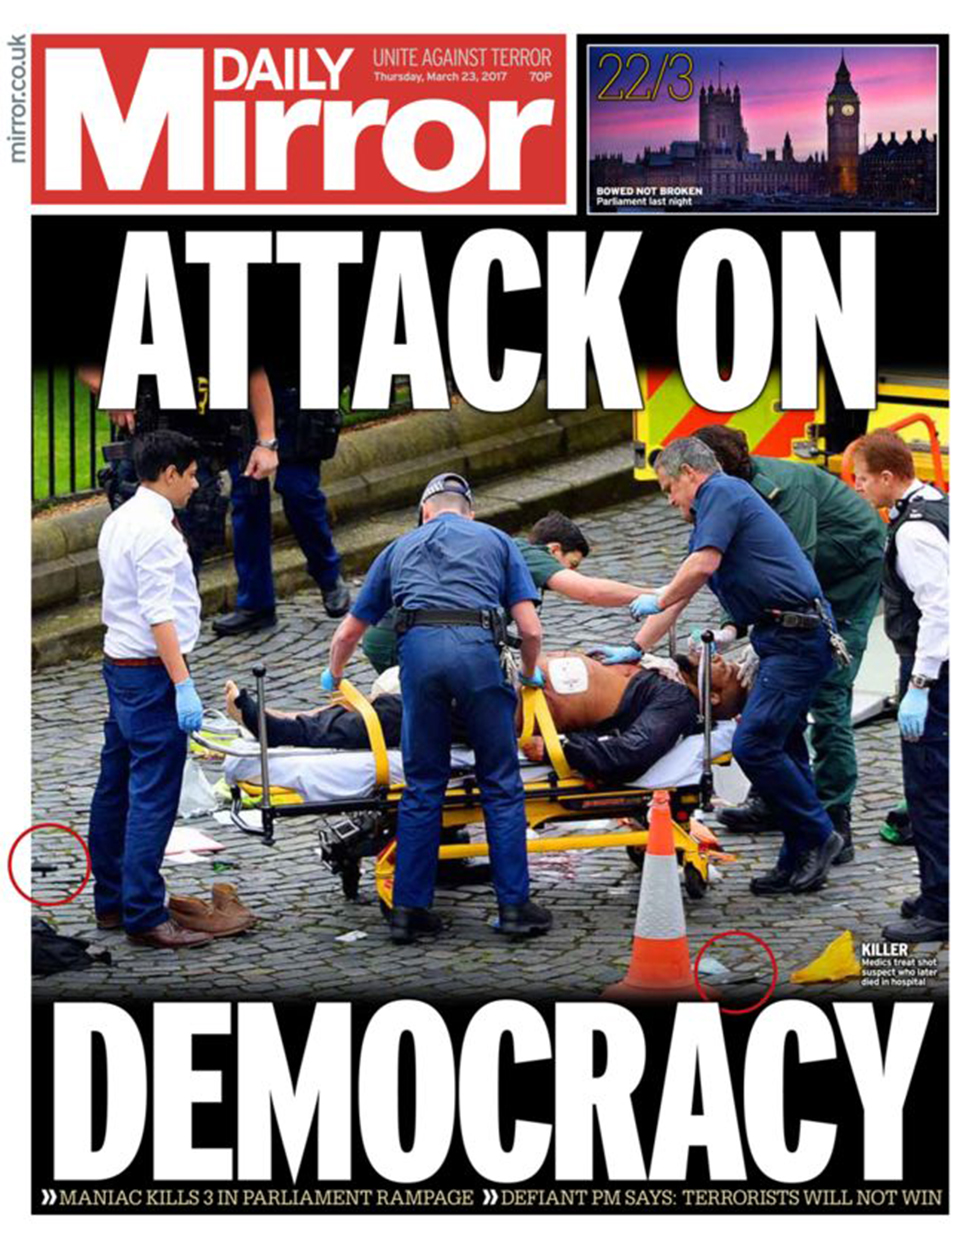 "מתקפה על הדמוקרטיה". כותרת העיתון "דיילי מירור" ()